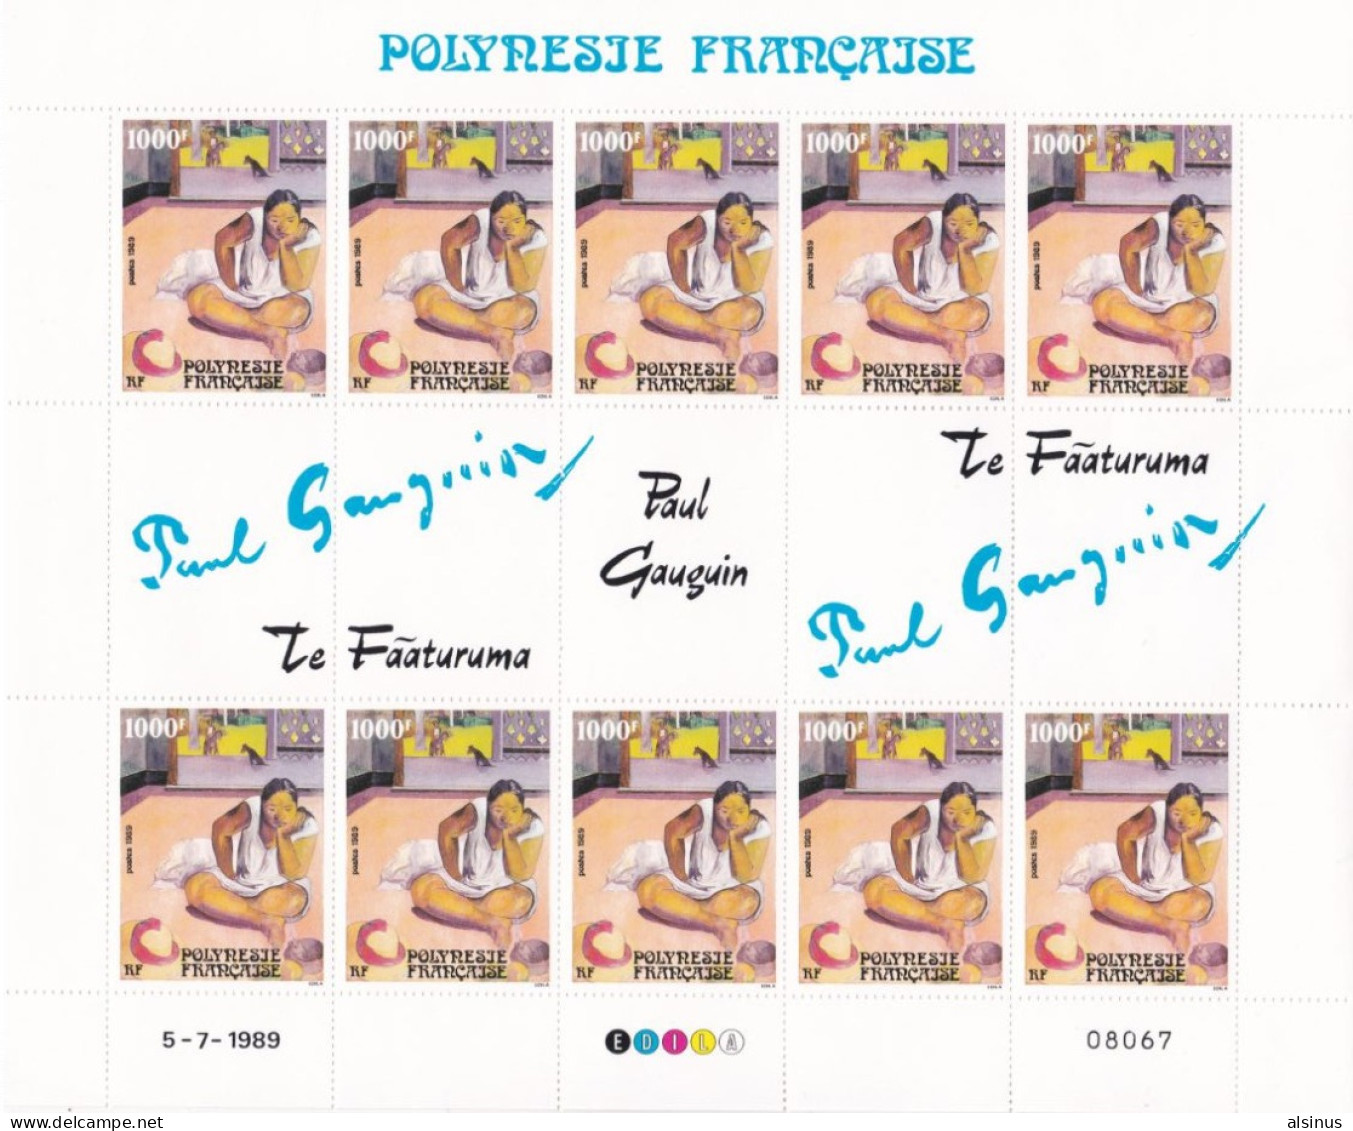 POLYNESIE FRANCAISE - 1989 - N° 346 MULTICOLORE - 1000 F -  PAUL GAUGUIN - PLANCHE COMPLETE DE 10 TIMBRES - ETAT NEUF - Neufs